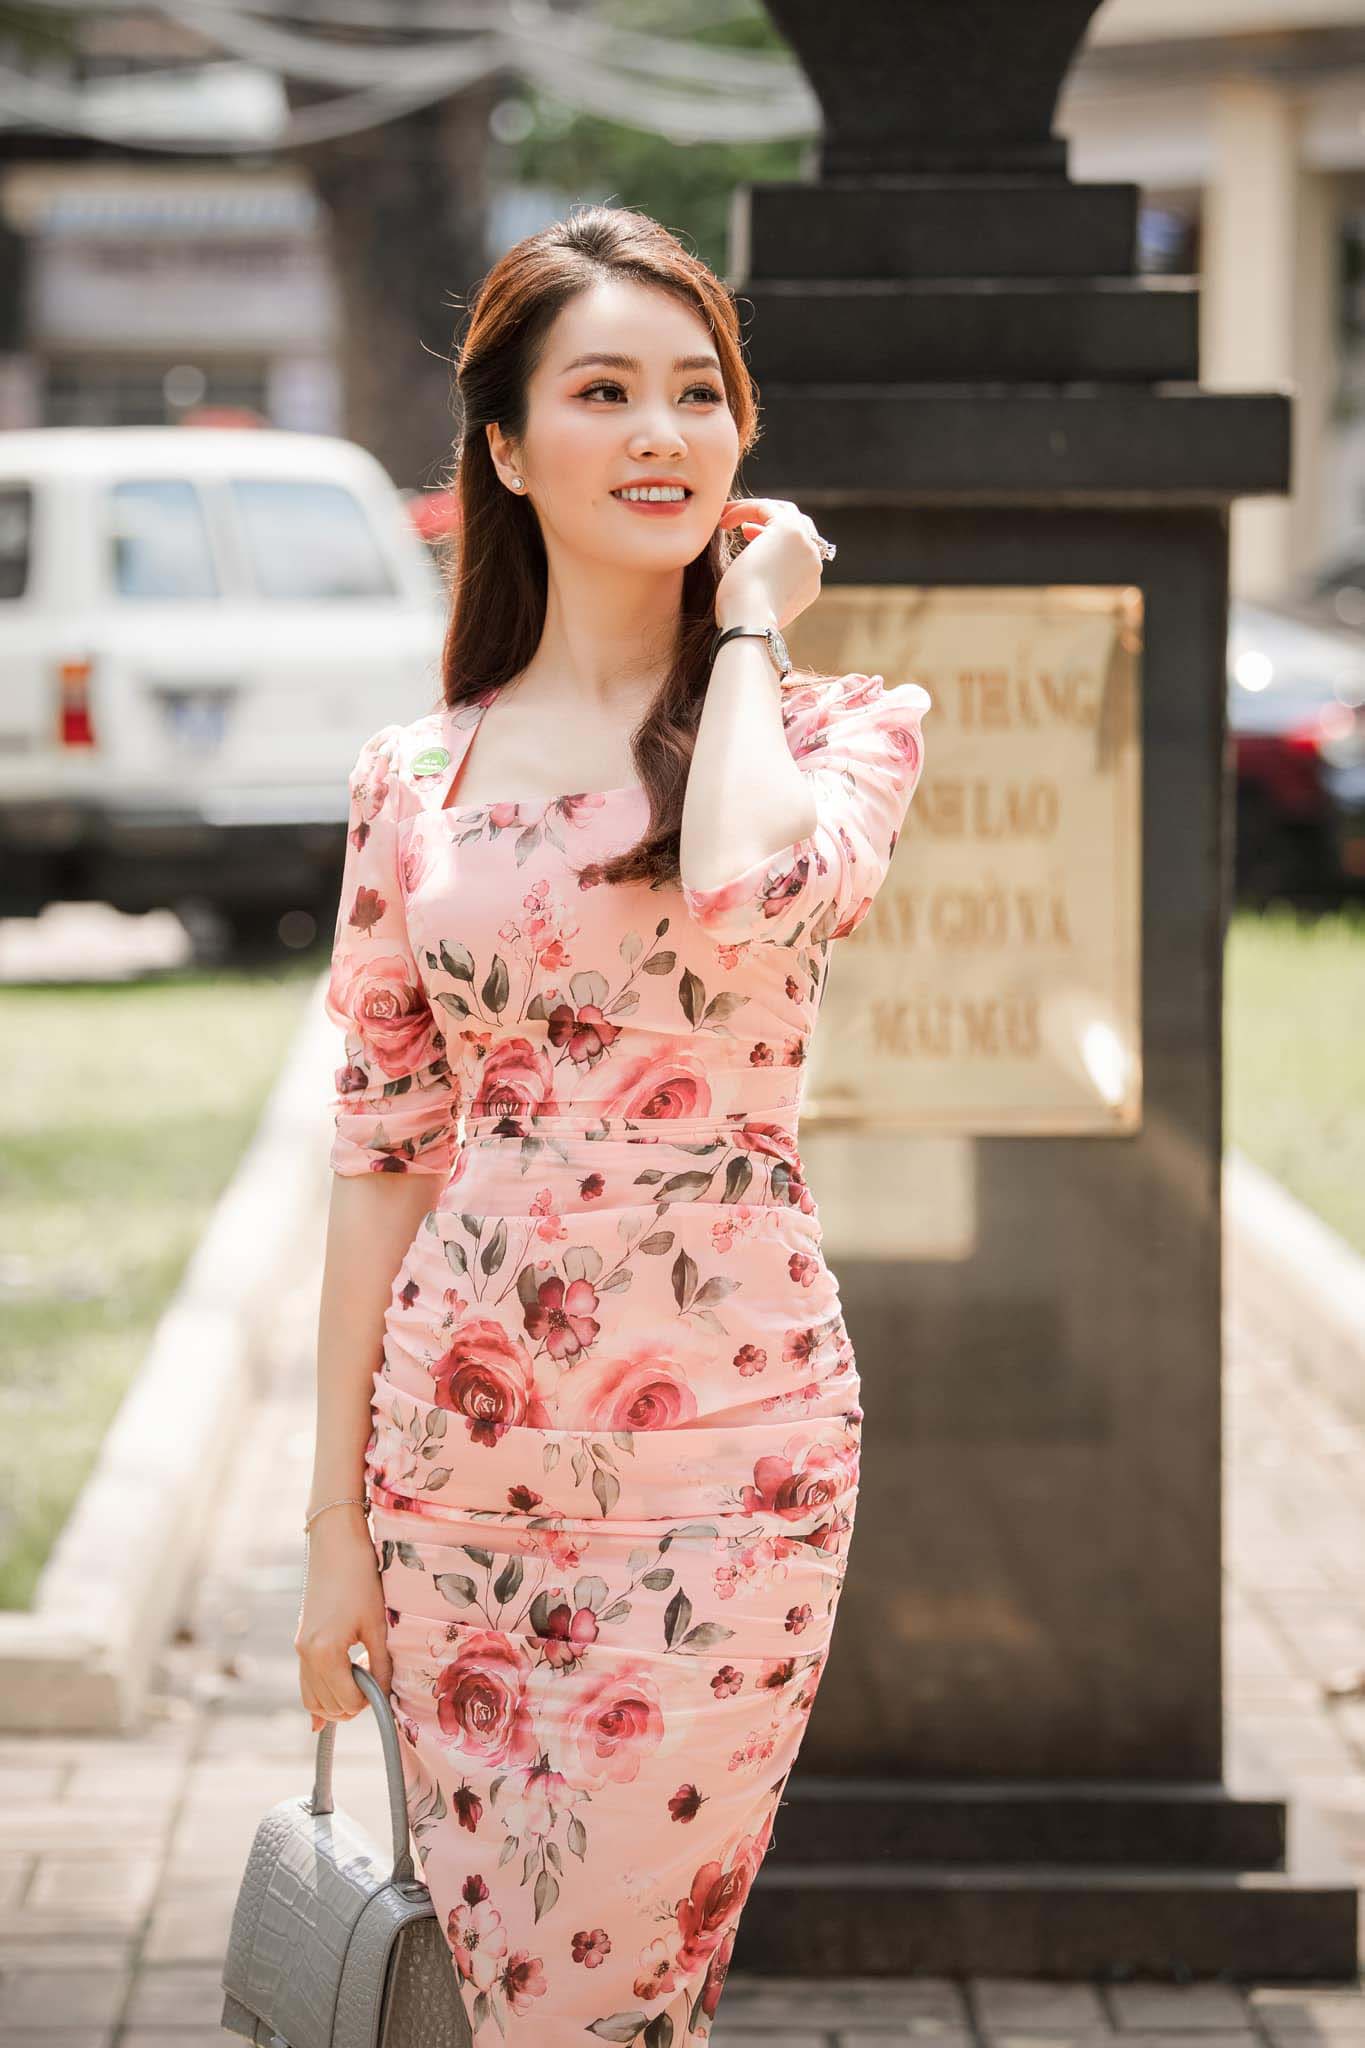 U40 vẫn diện váy hoa trẻ trung rạng ngời, BTV Thuỵ Vân không hổ danh hoa khôi nhà Đài - 1